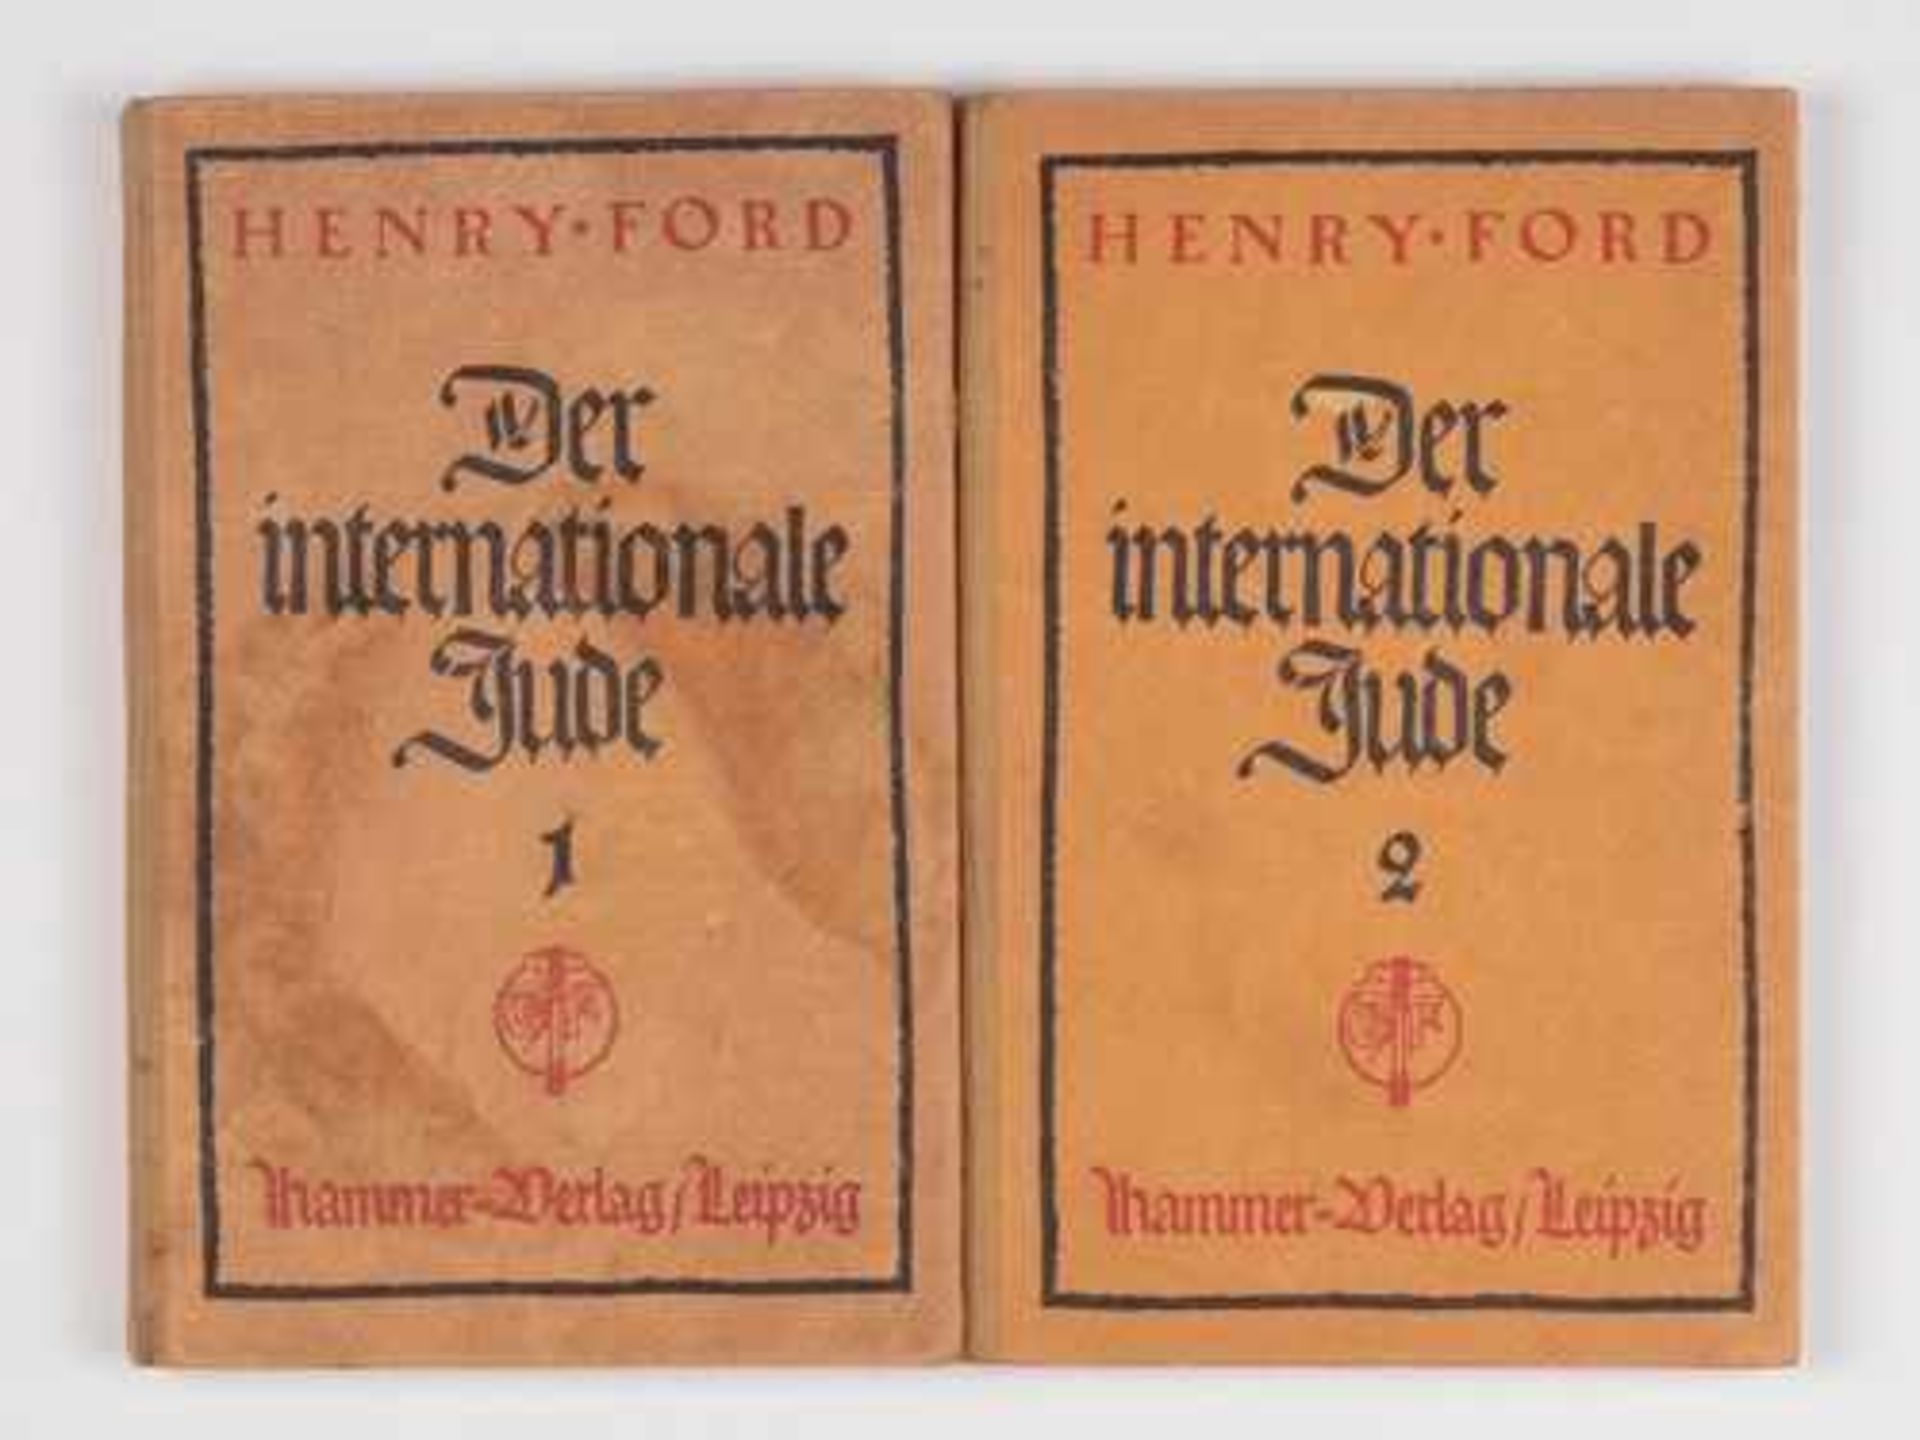 Bücher - 3.Reich Ford, Henry:"Der internationale Jude", Bd. 1 u. 2., Hammer-Verlag Leipzig 1922,15.